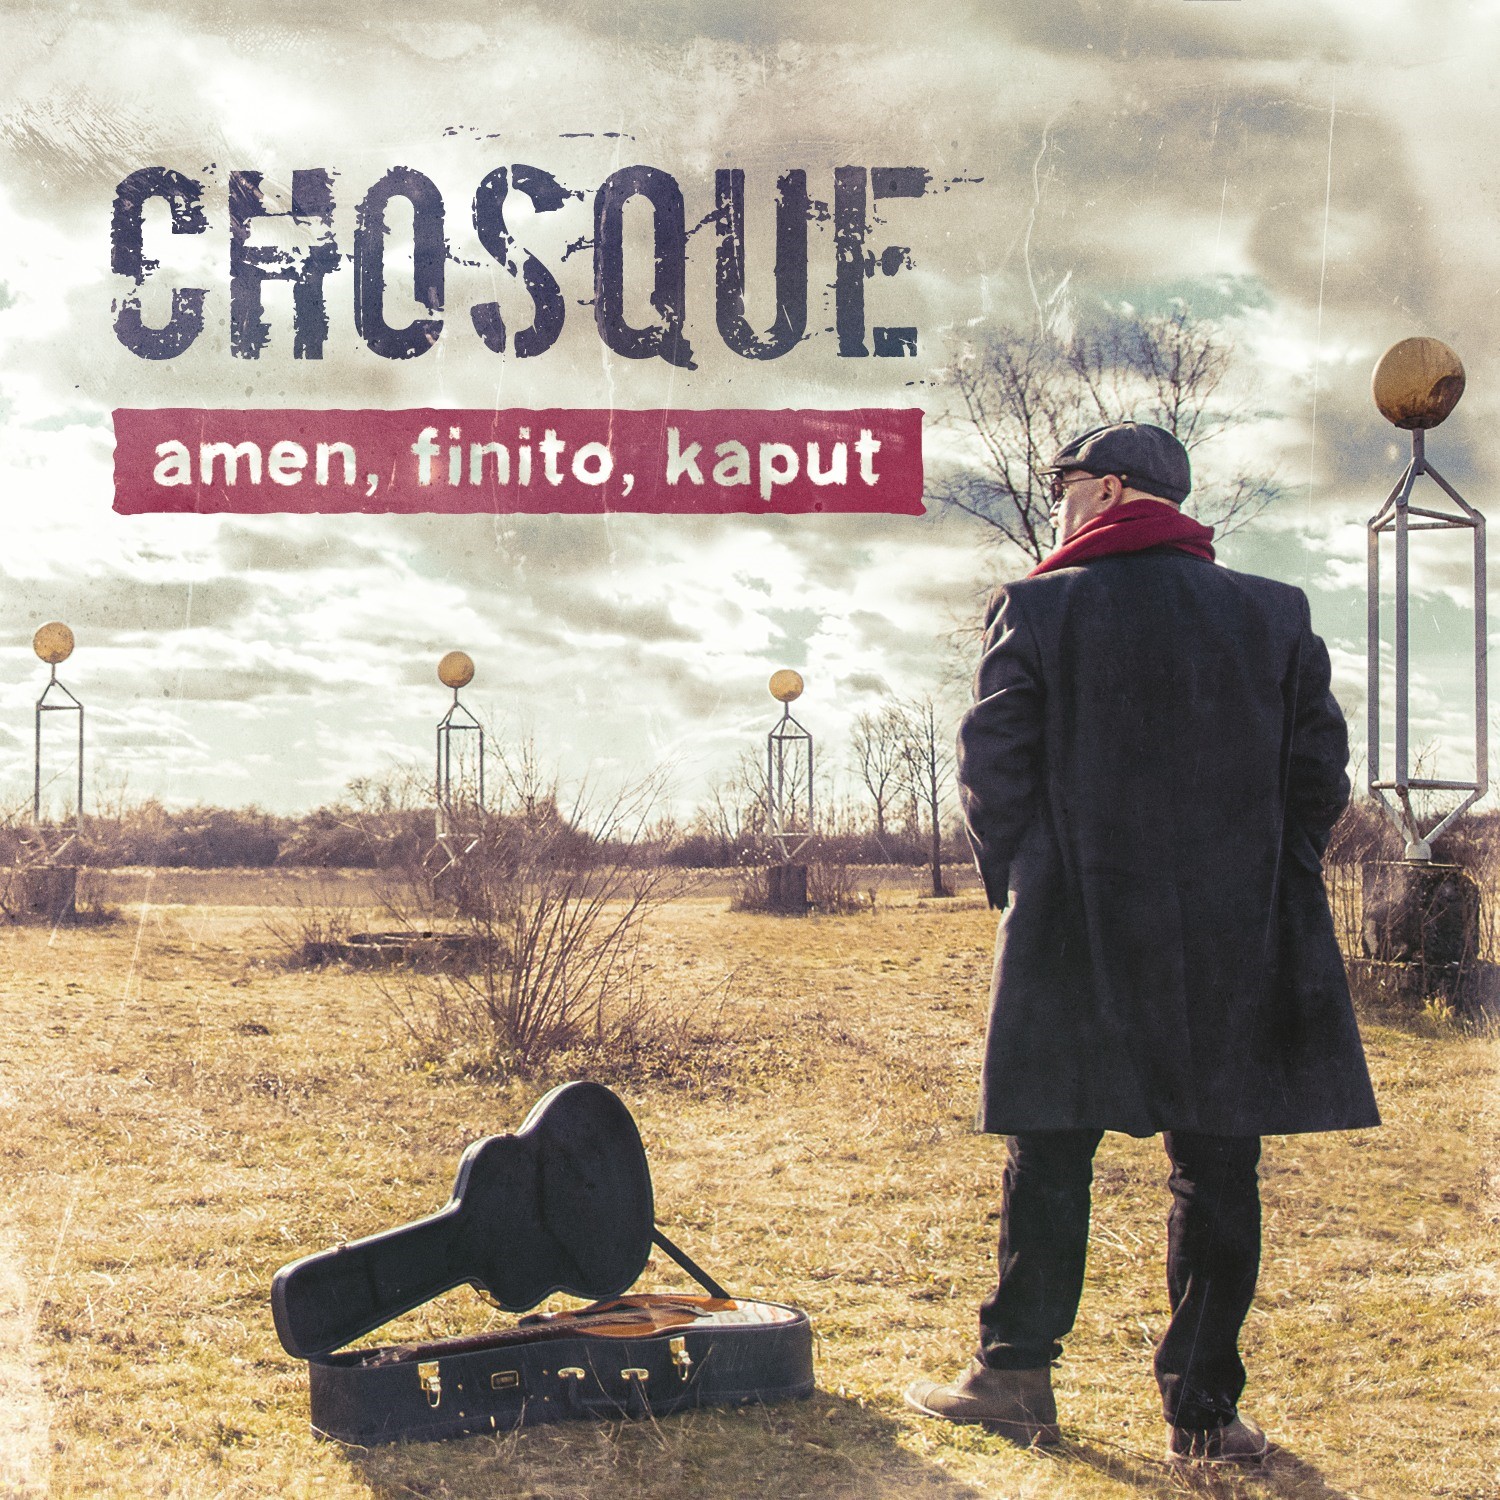 Kantautor Chosque na streaming servisima objavio prvi solo album “Amen, finito, kaput” i najavio CD izdanje